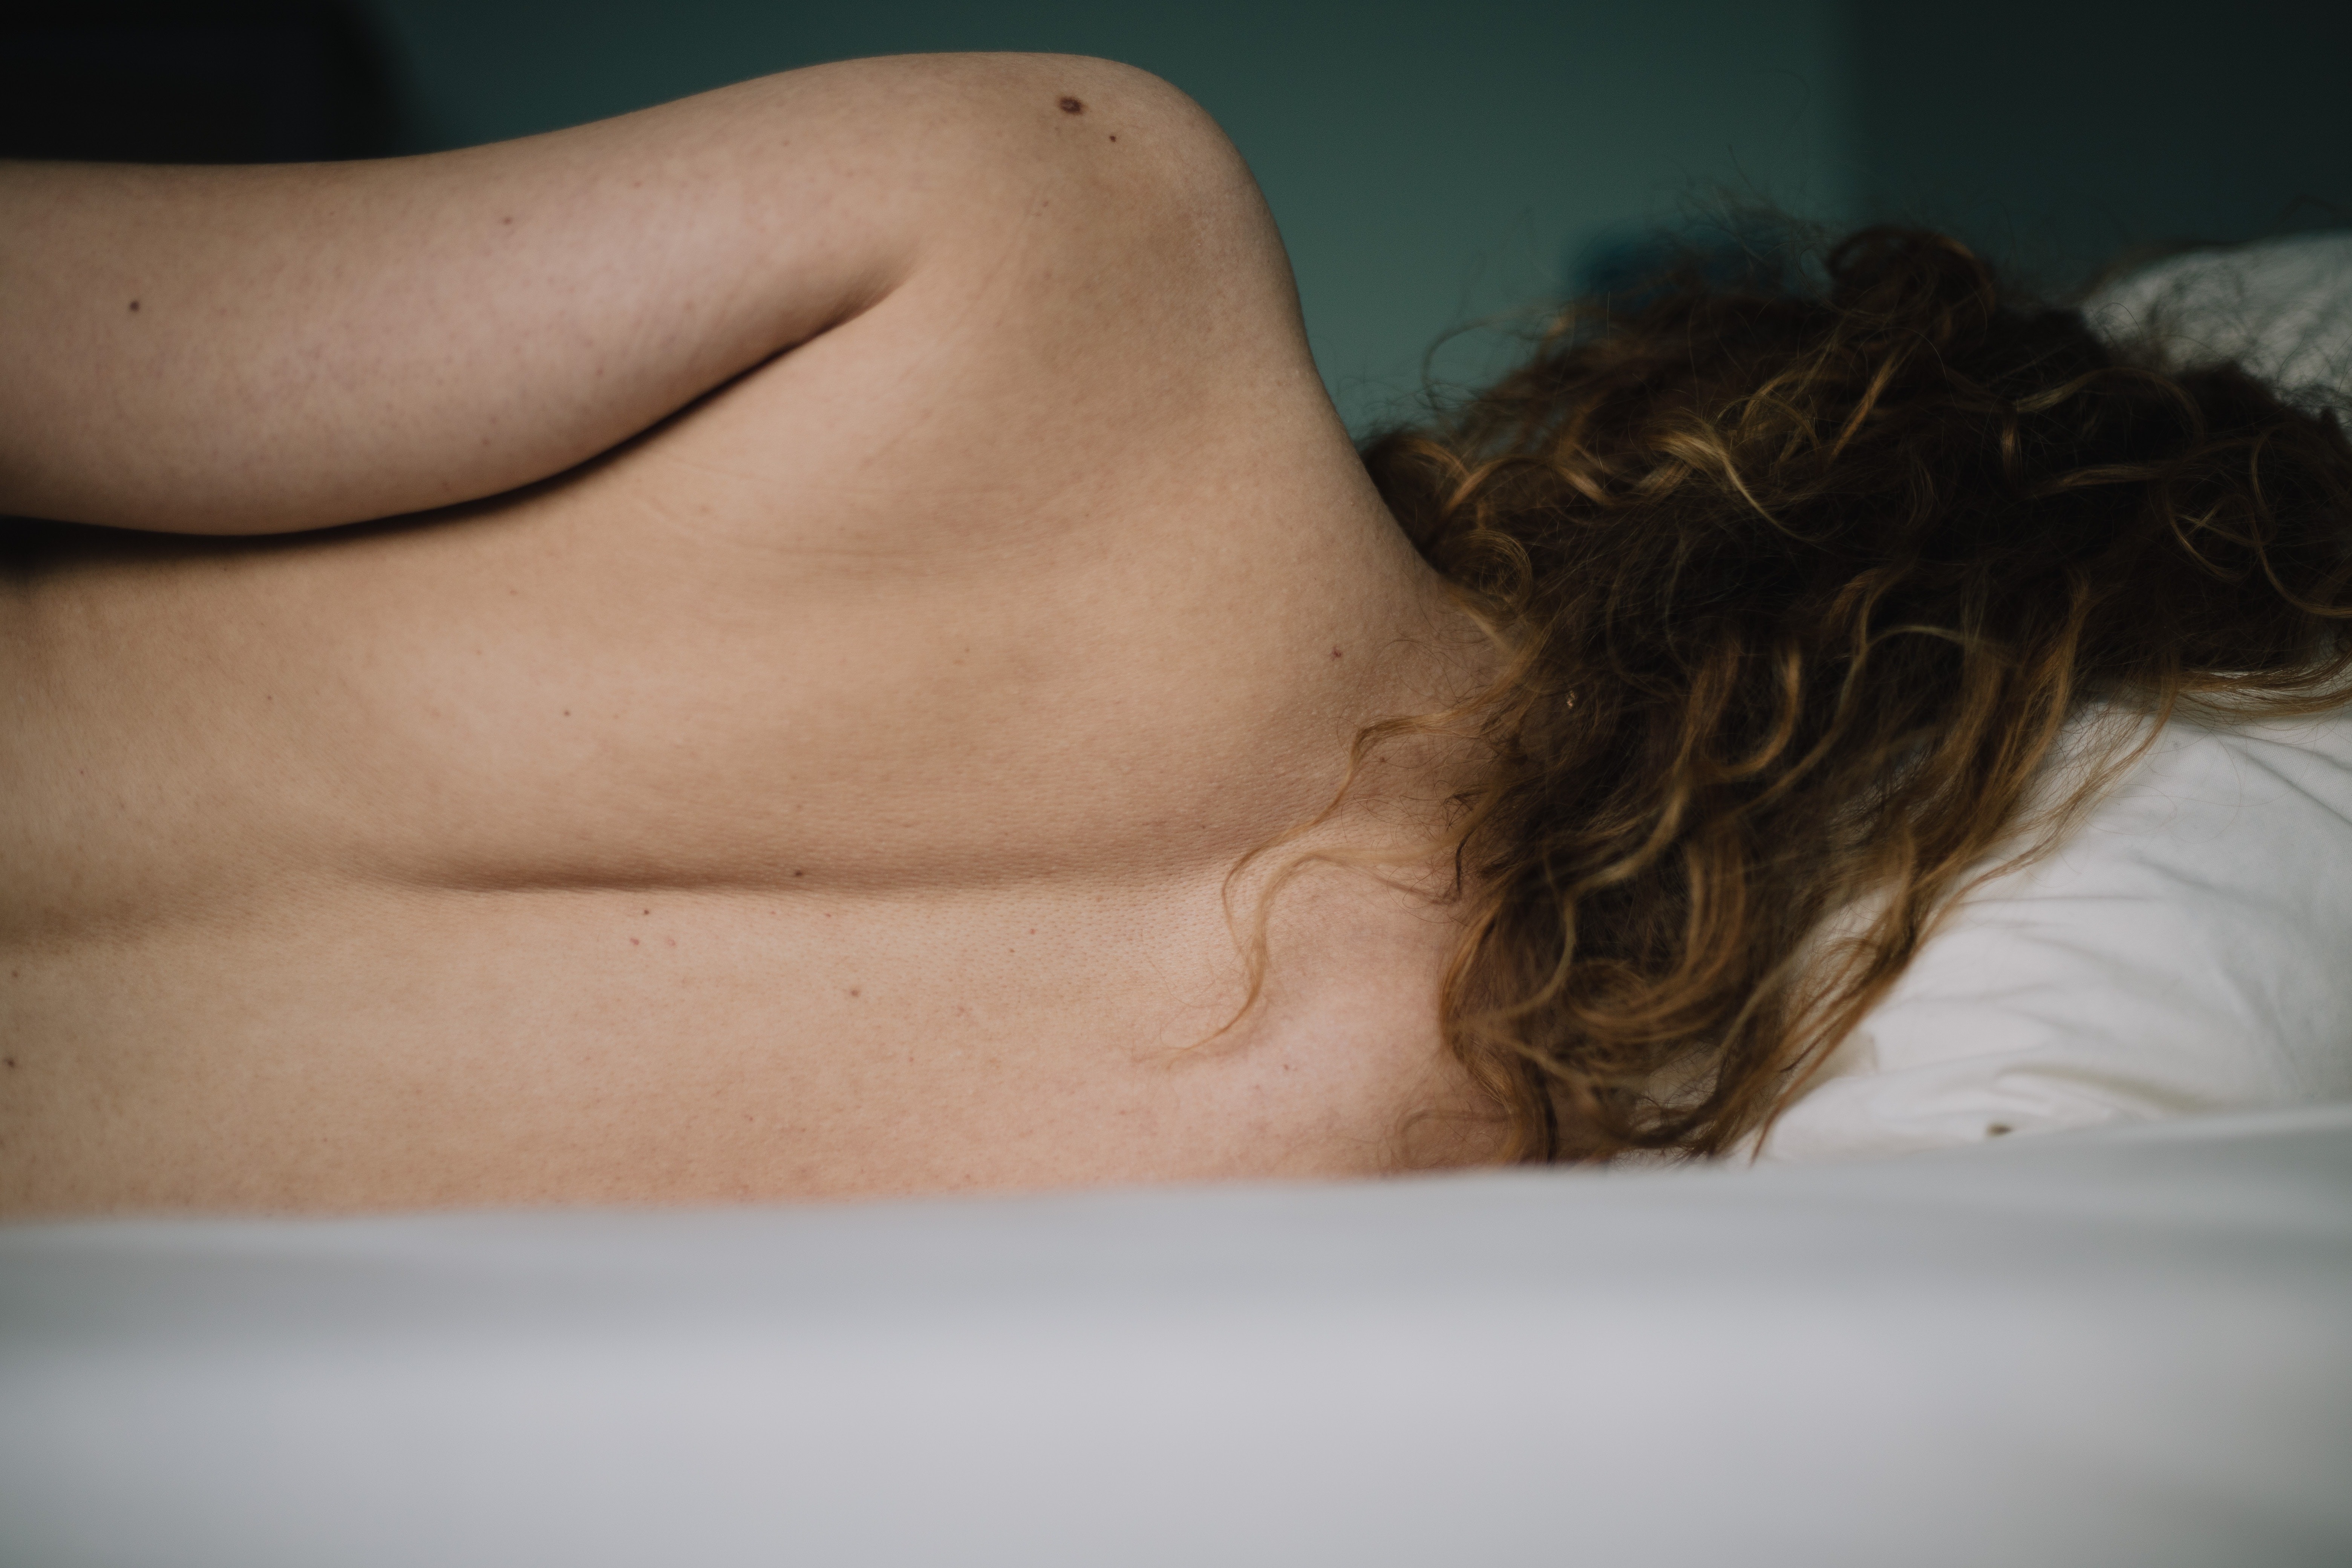 Estudo aponta como a sexualidade de mulheres com câncer é afetada (Foto: Sinitta Leunen/Pexels)